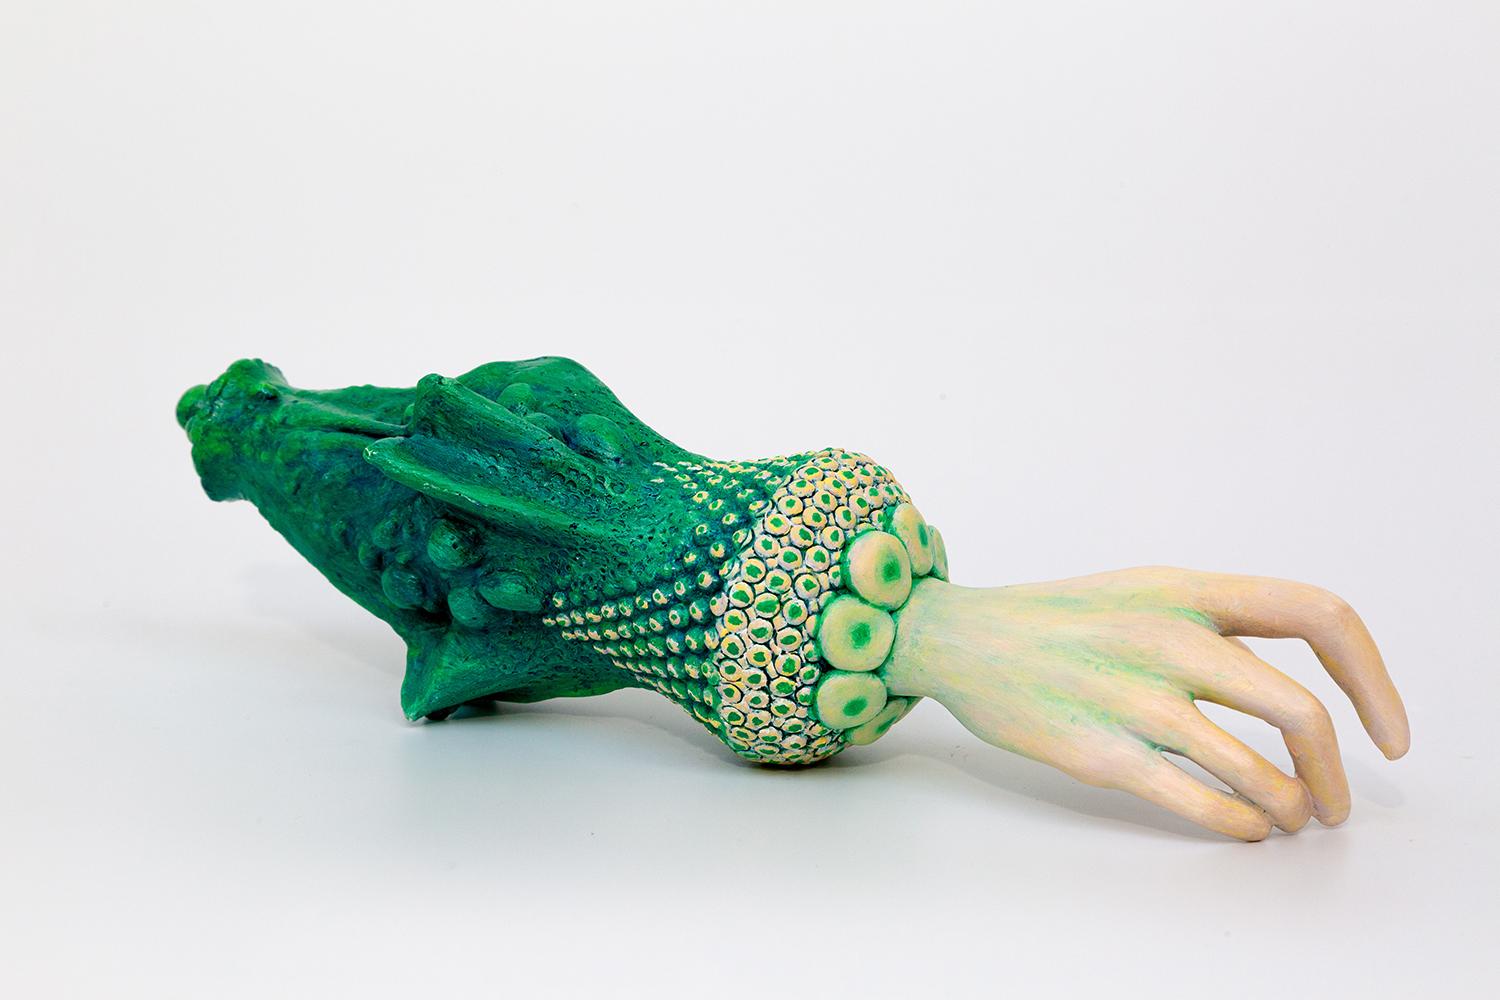 Lauréat en 2023 du prix du gouverneur du Vermont pour l'excellence dans les arts,

Leslie Fry est représentée dans cette exposition par des sculptures fantastiques de mains féminines, intitulées la série "Cuffed".   Des gestes tendus et maniérés,